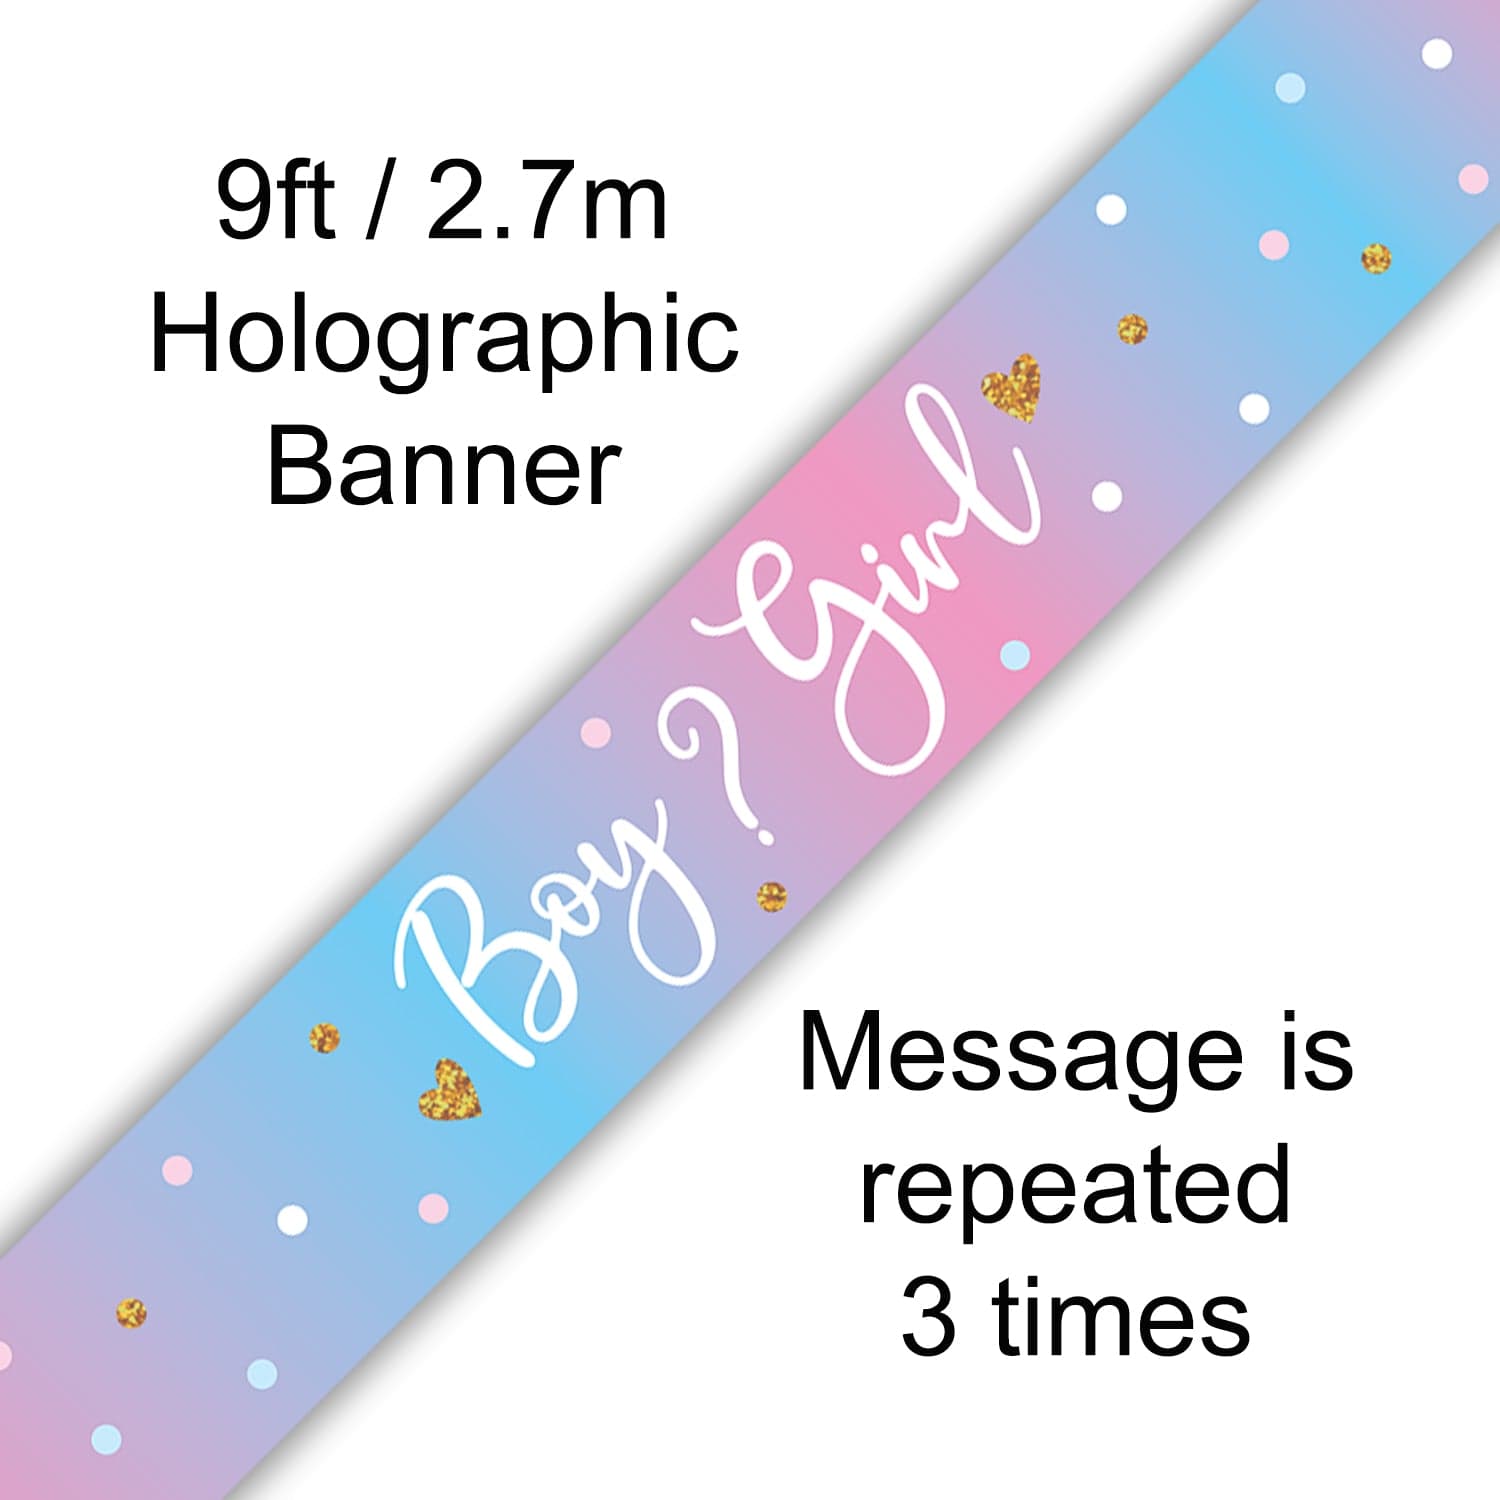 Boy or Girl Gender Reveal Banner